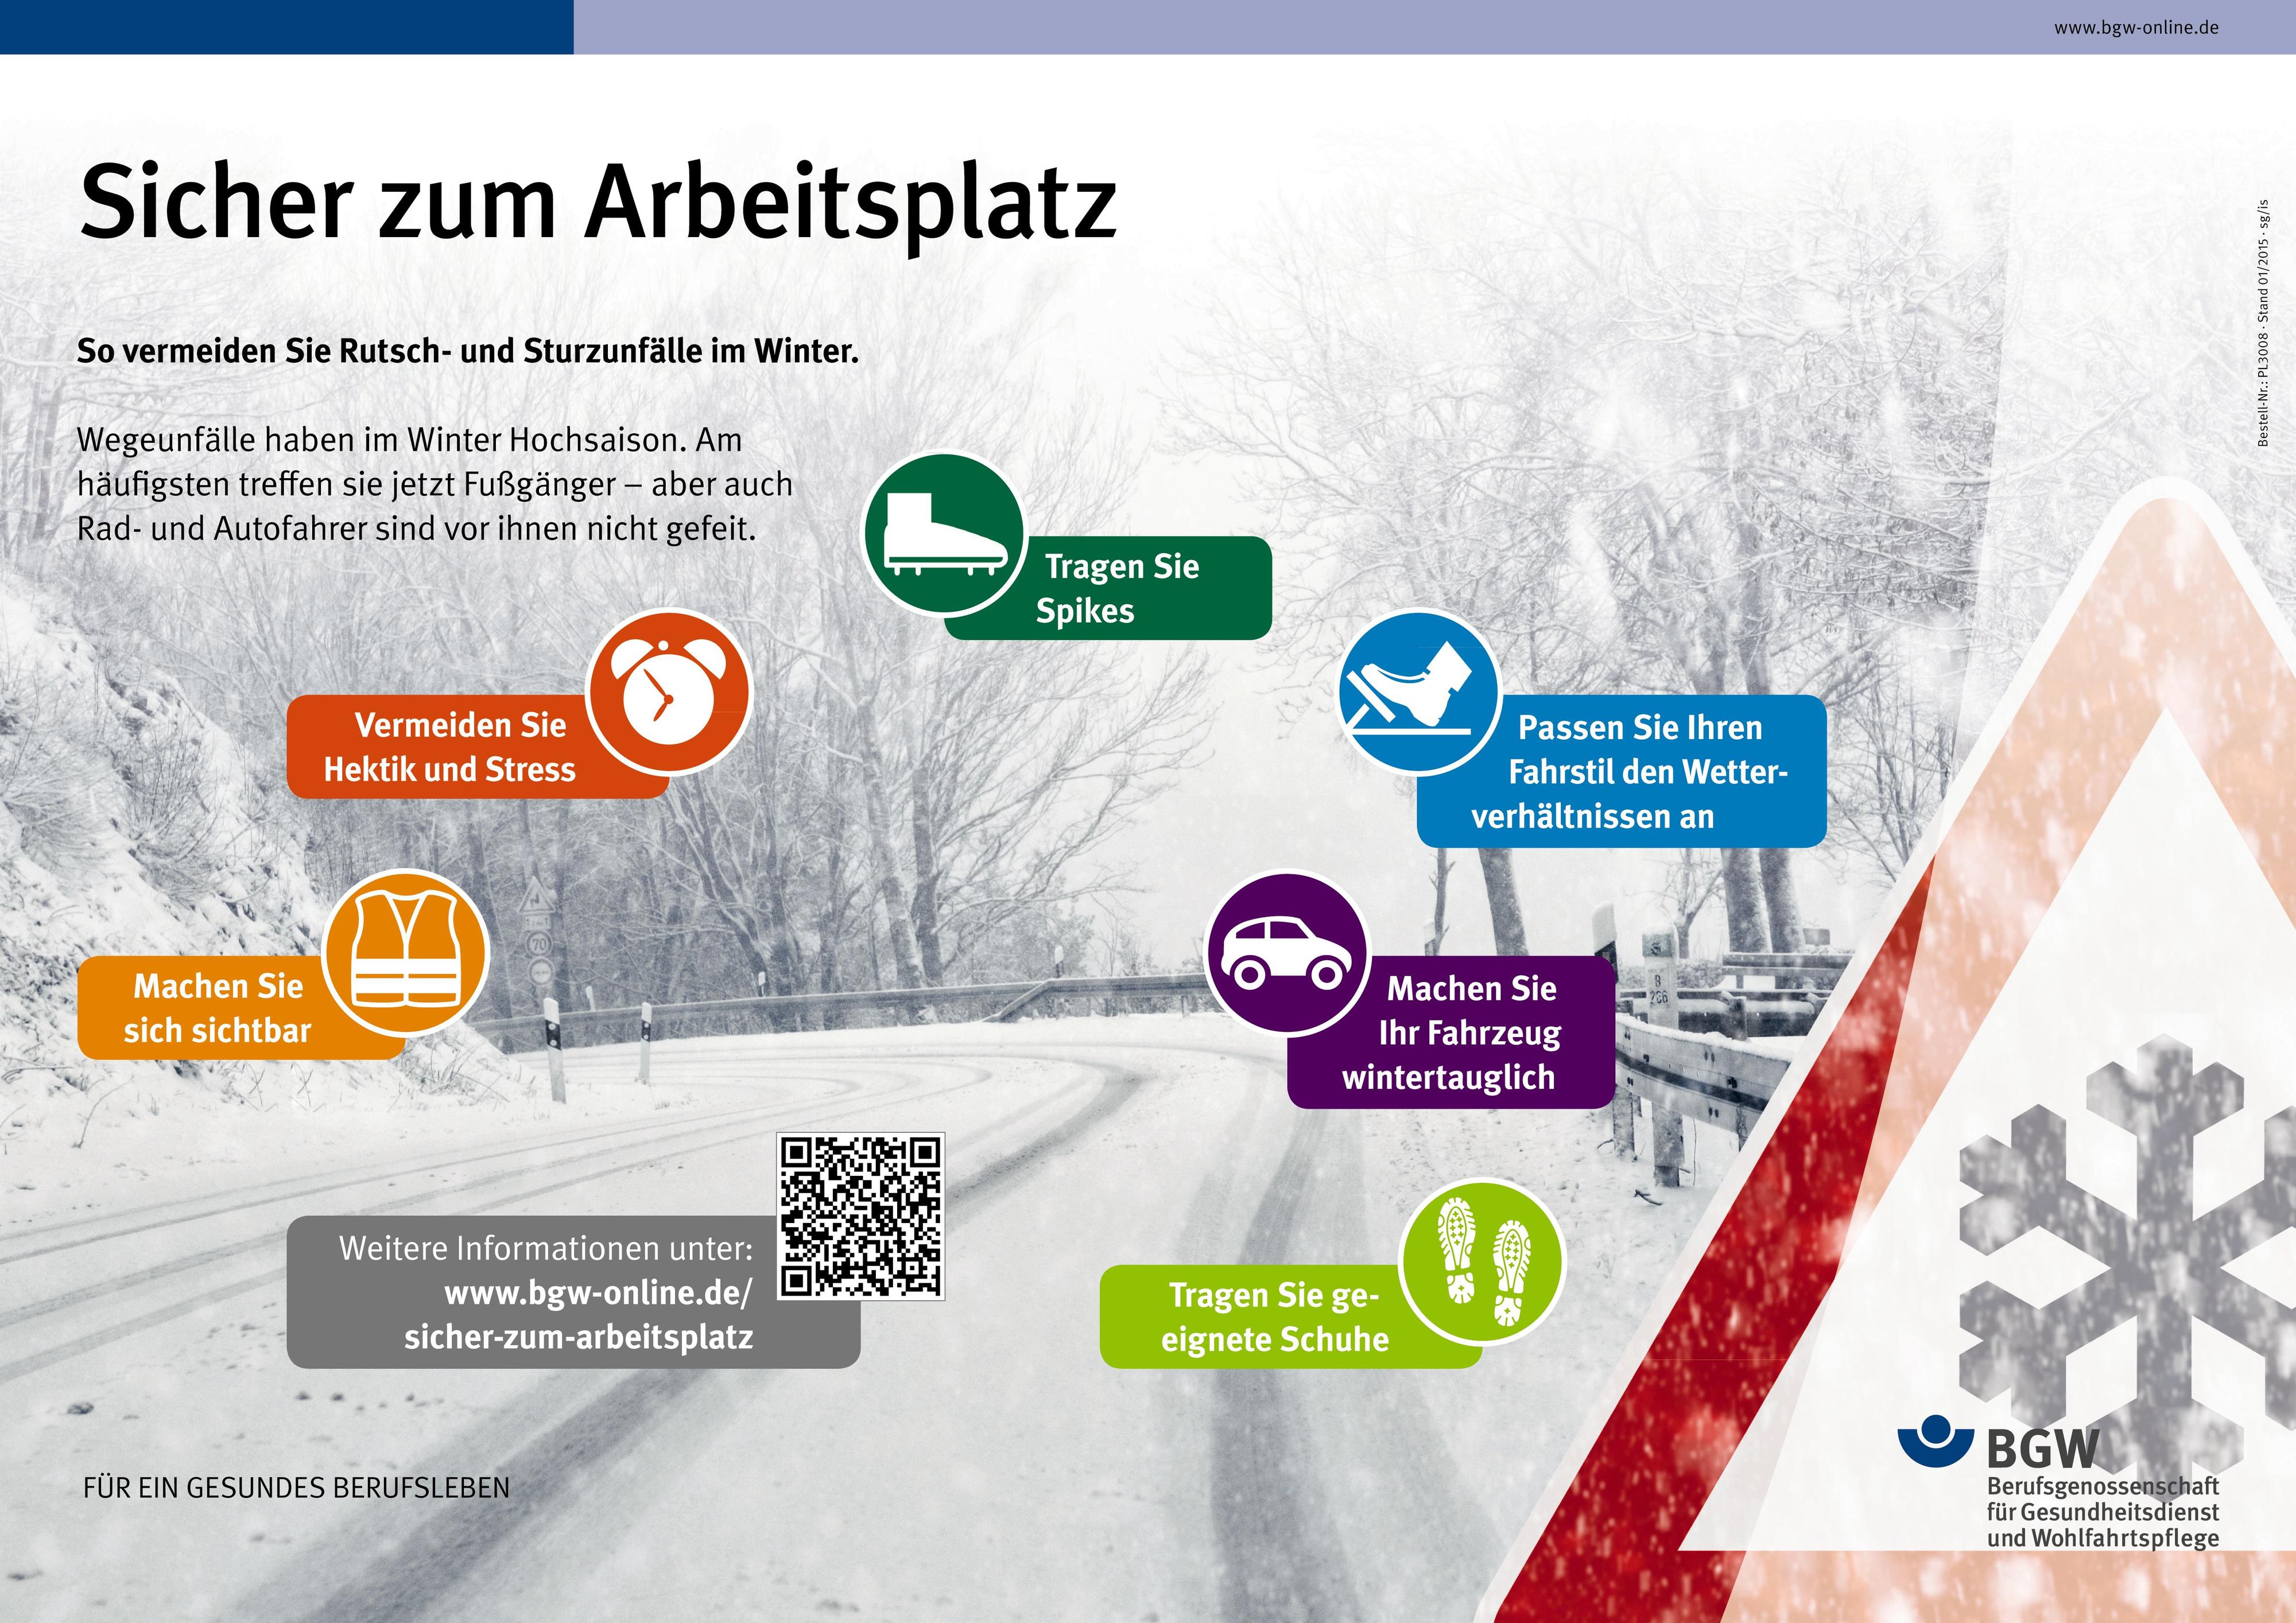 Themenplakat: Sicher zum Arbeitsplatz - Verkehrszeichen "Achtung Schneefall" auf einer verschneiten, kurvenreiche Straße und Tipps für einen sicheren Arbeitsweg